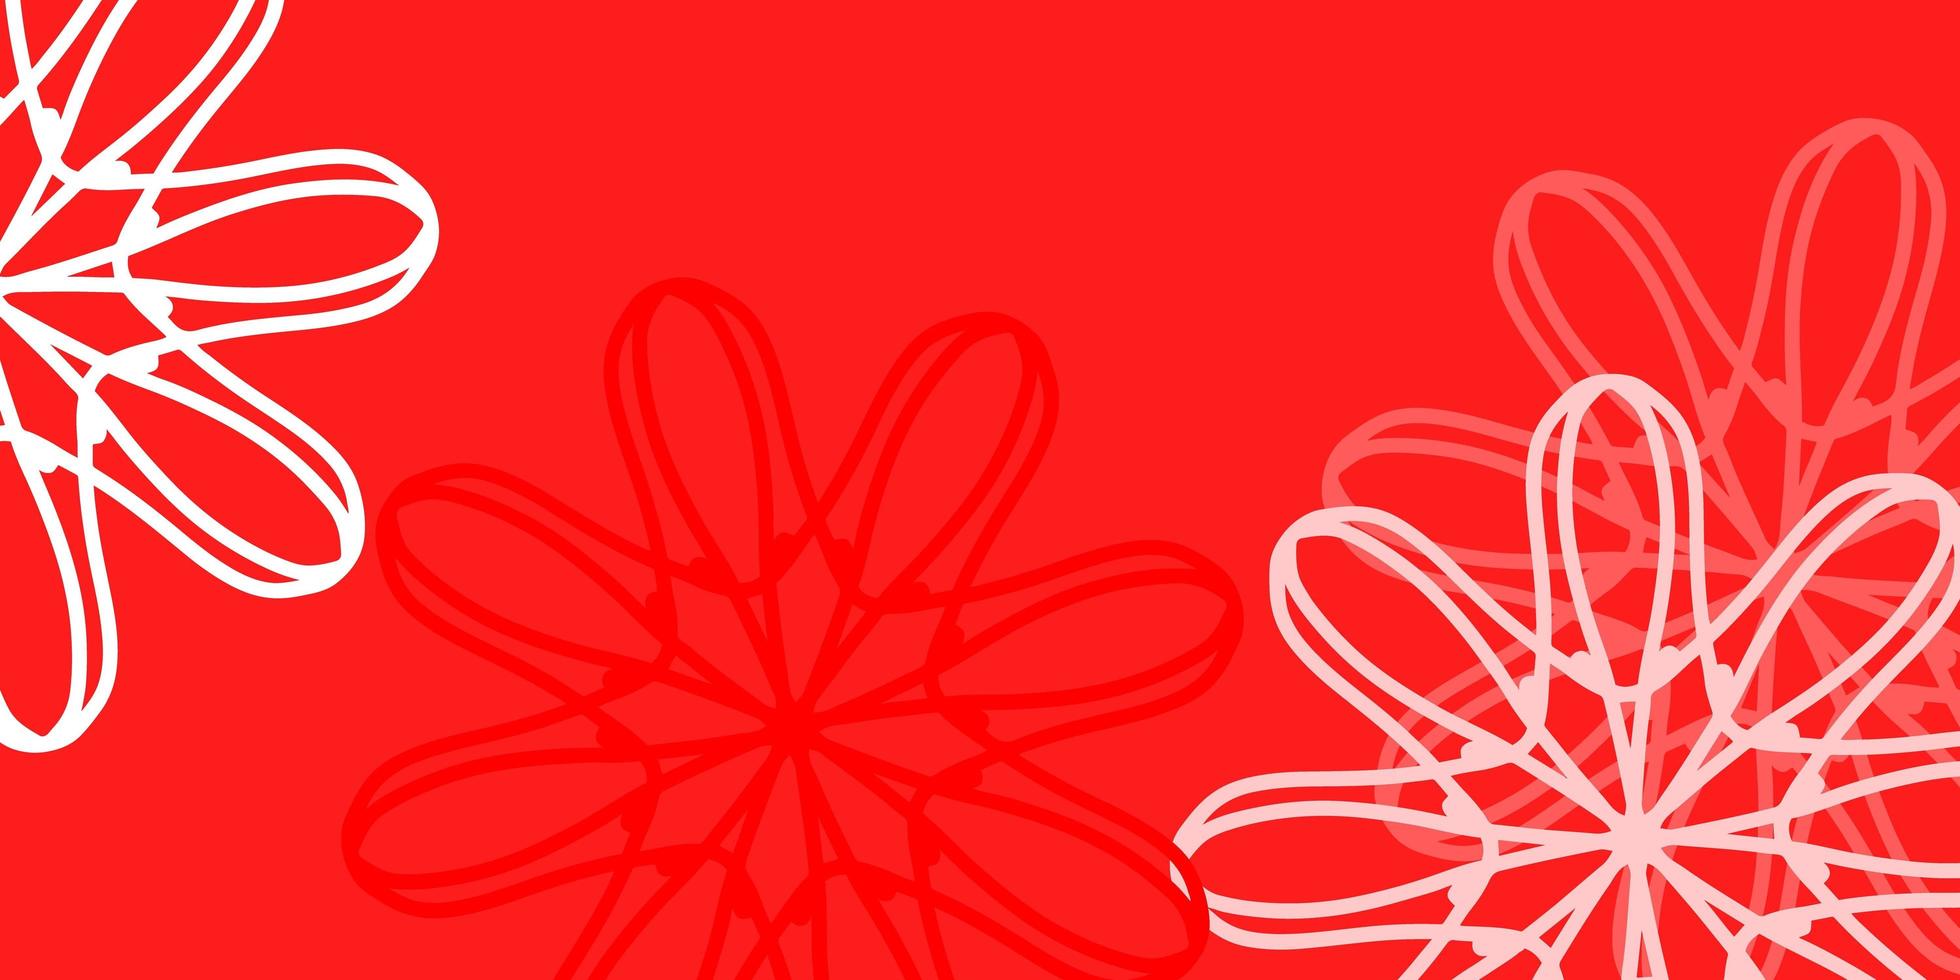 textura de doodle de vetor vermelho claro com flores